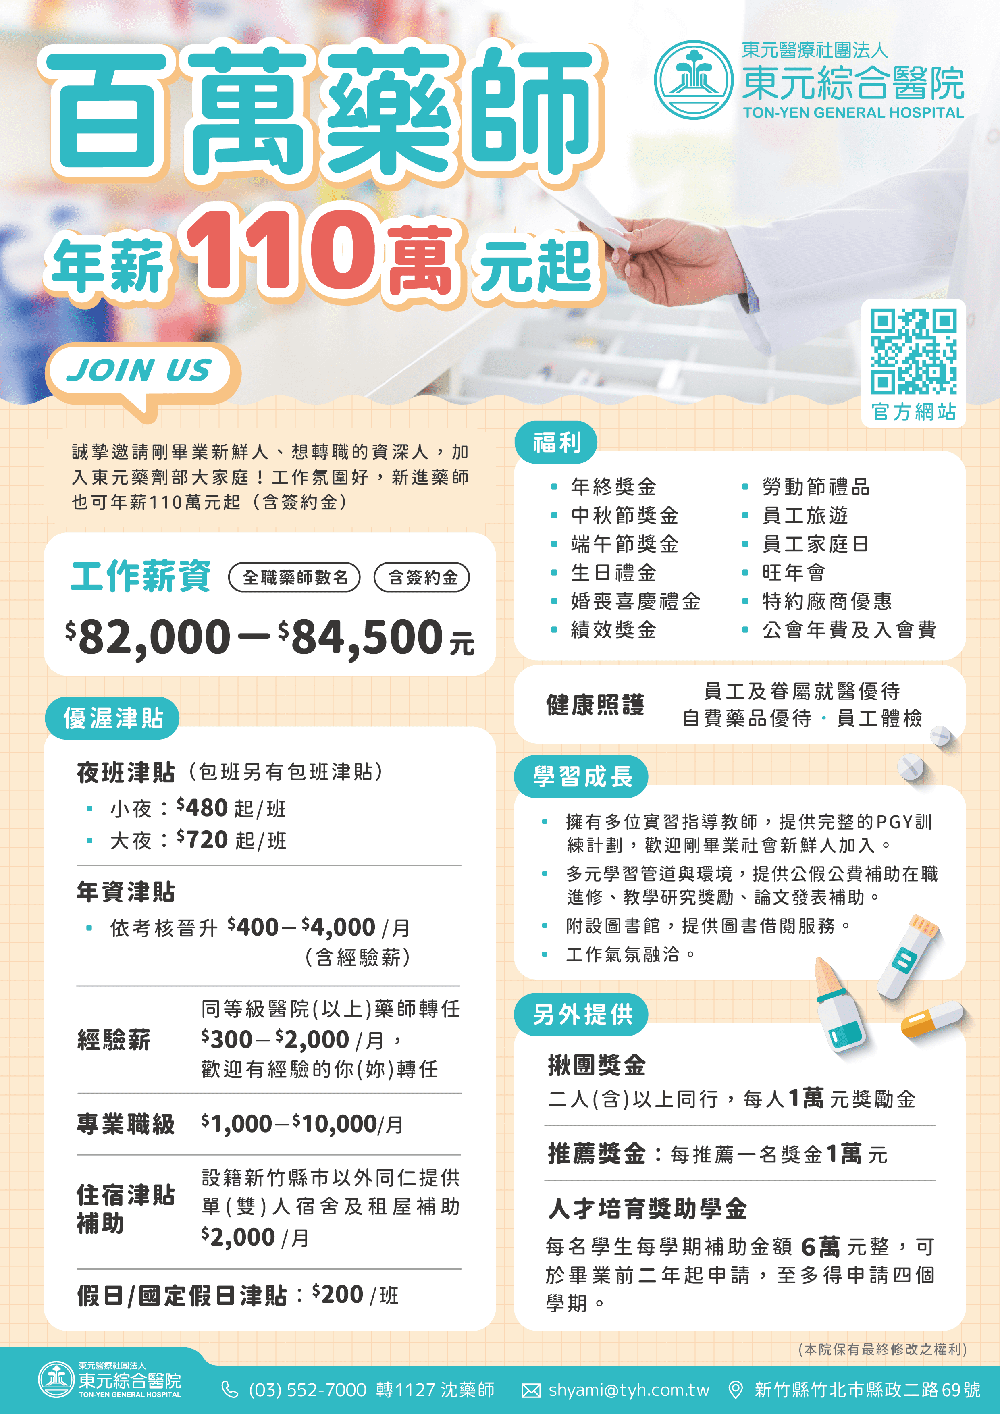 東元醫院招募百萬藥師